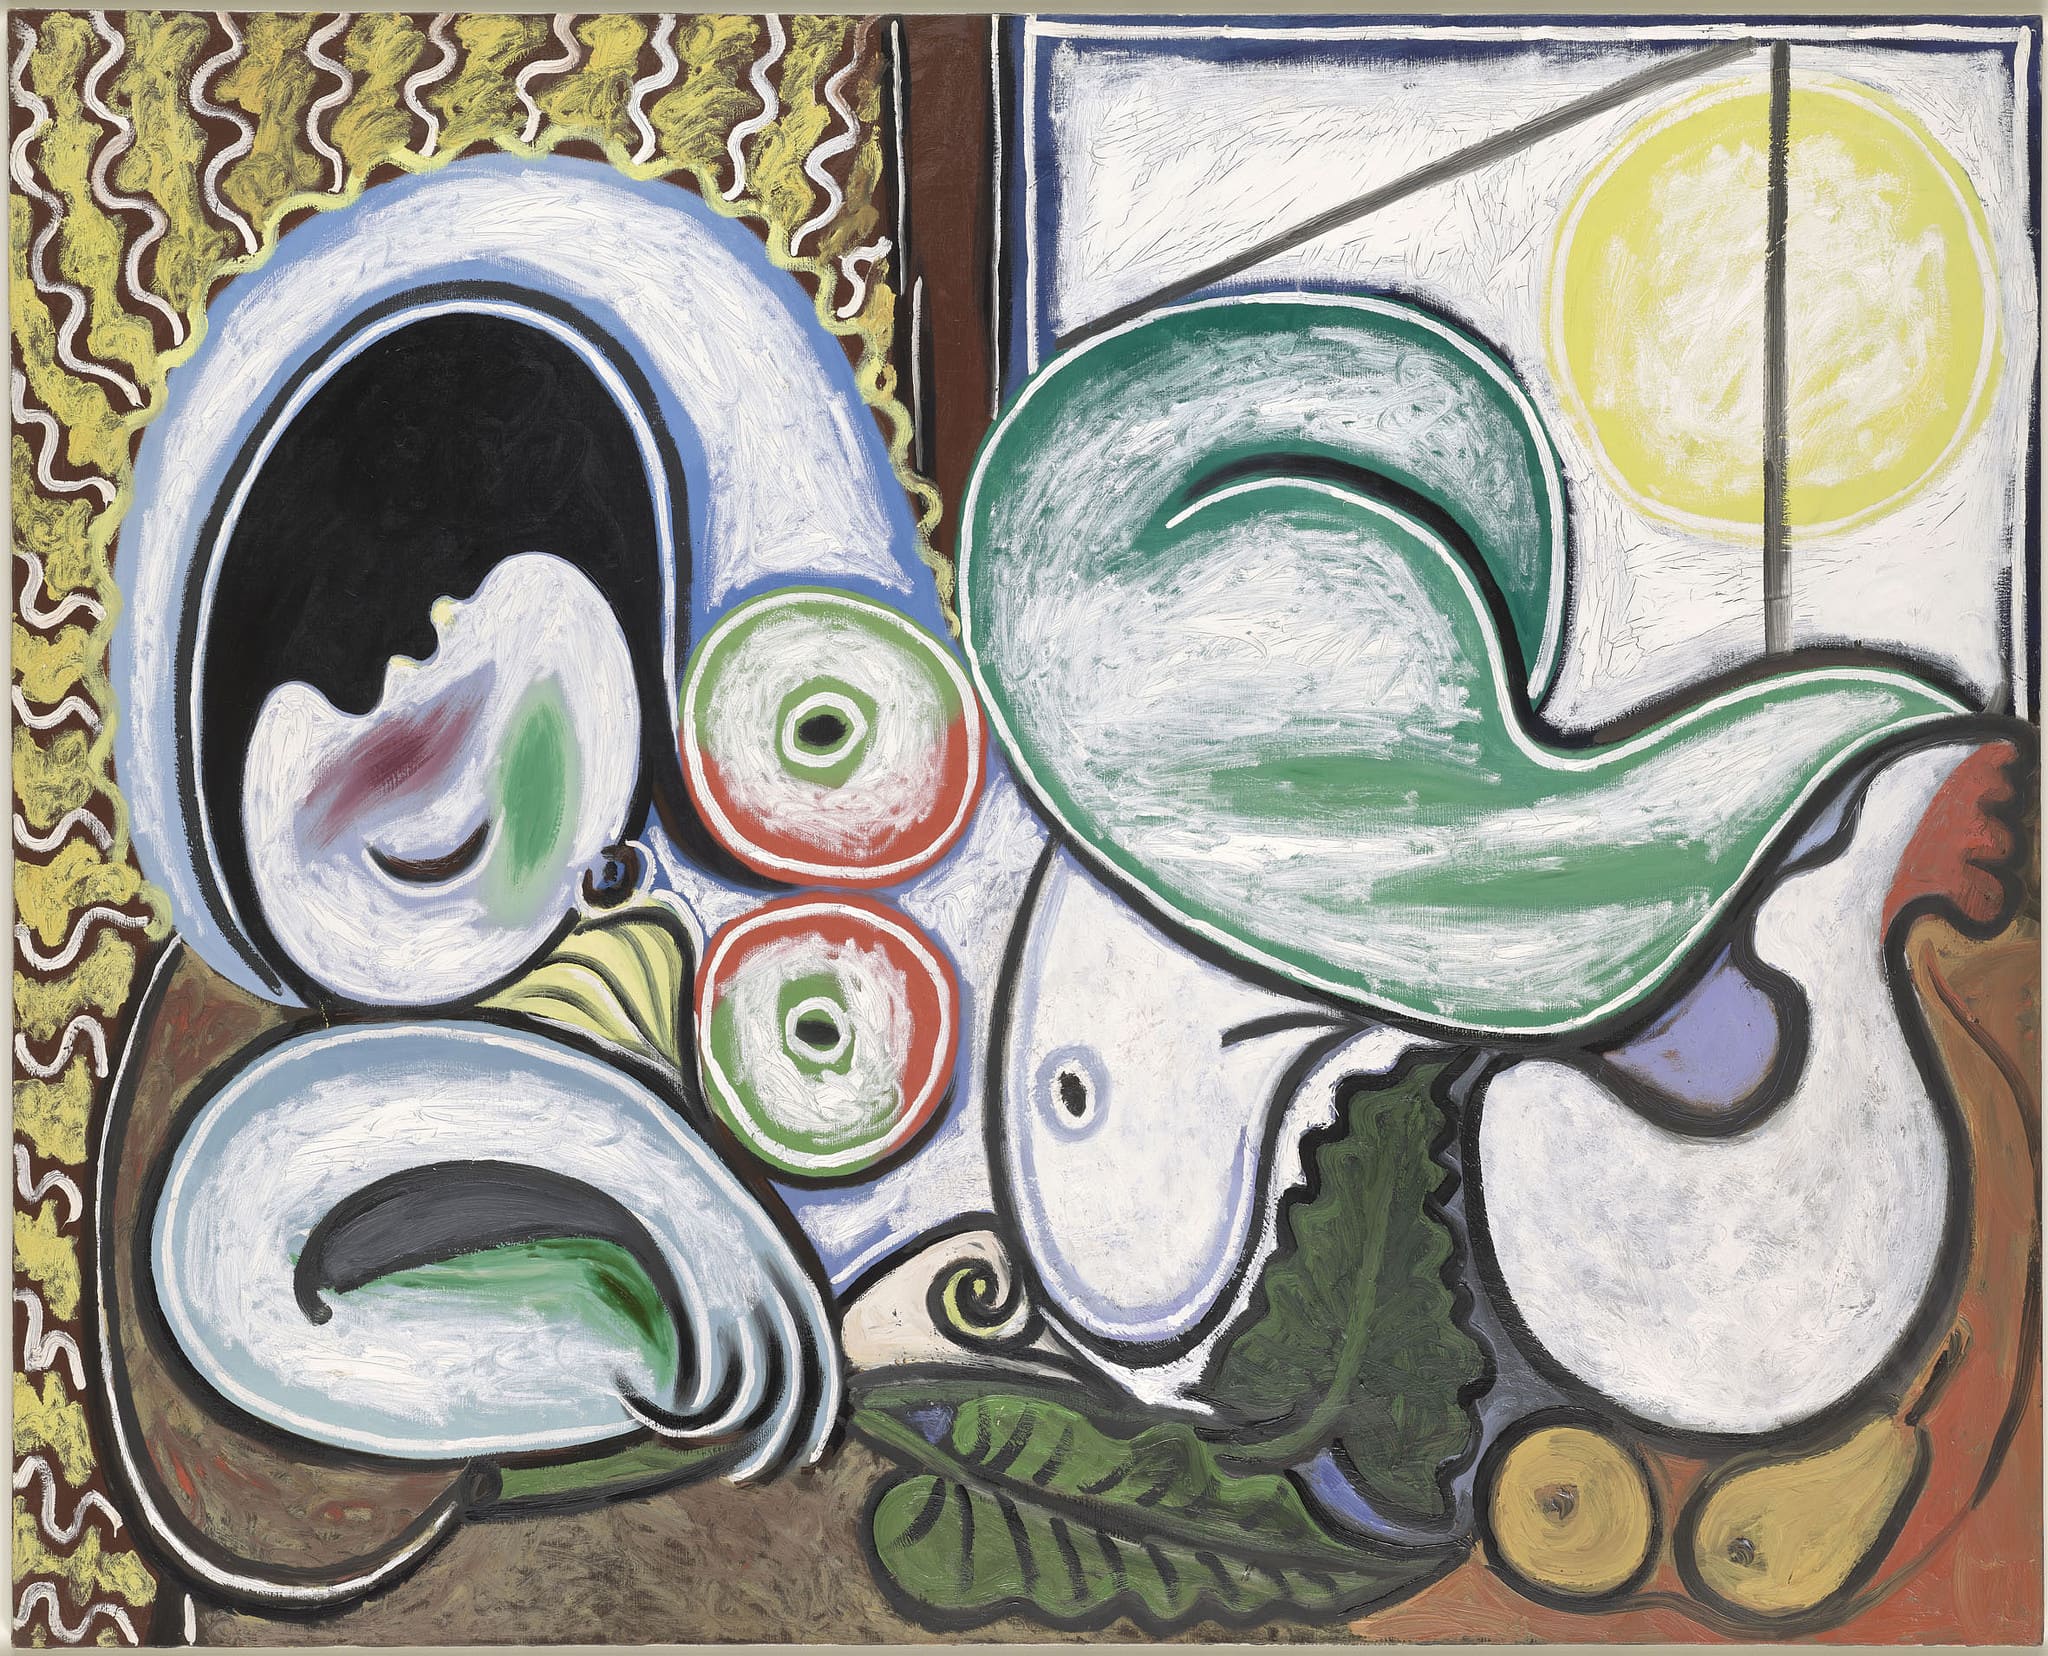 Nu couchÃˆ Picasso Pablo (dit), Ruiz Picasso Pablo (1881-1973). Belgique, Bruxelles, palais des Beaux-Arts. MP142. (ph. Comune di Milano)